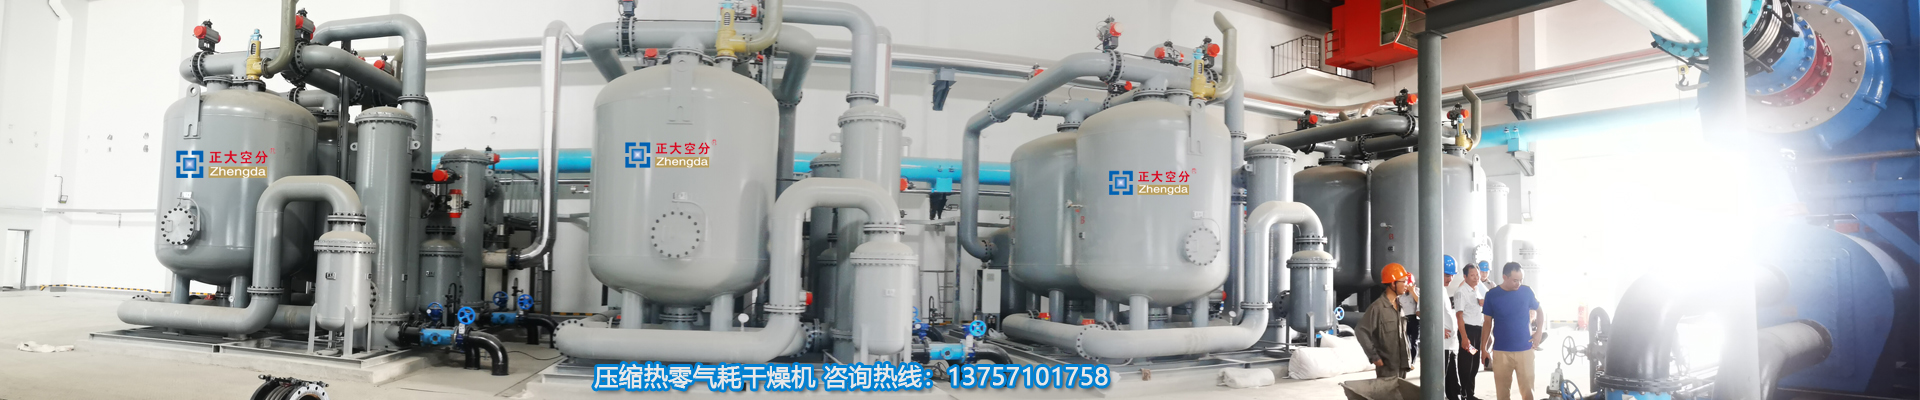 PSA制氮设备-零气耗干燥机、余热再生干燥机、余热式干燥器生产厂家、浙江正大空分设备有限公司